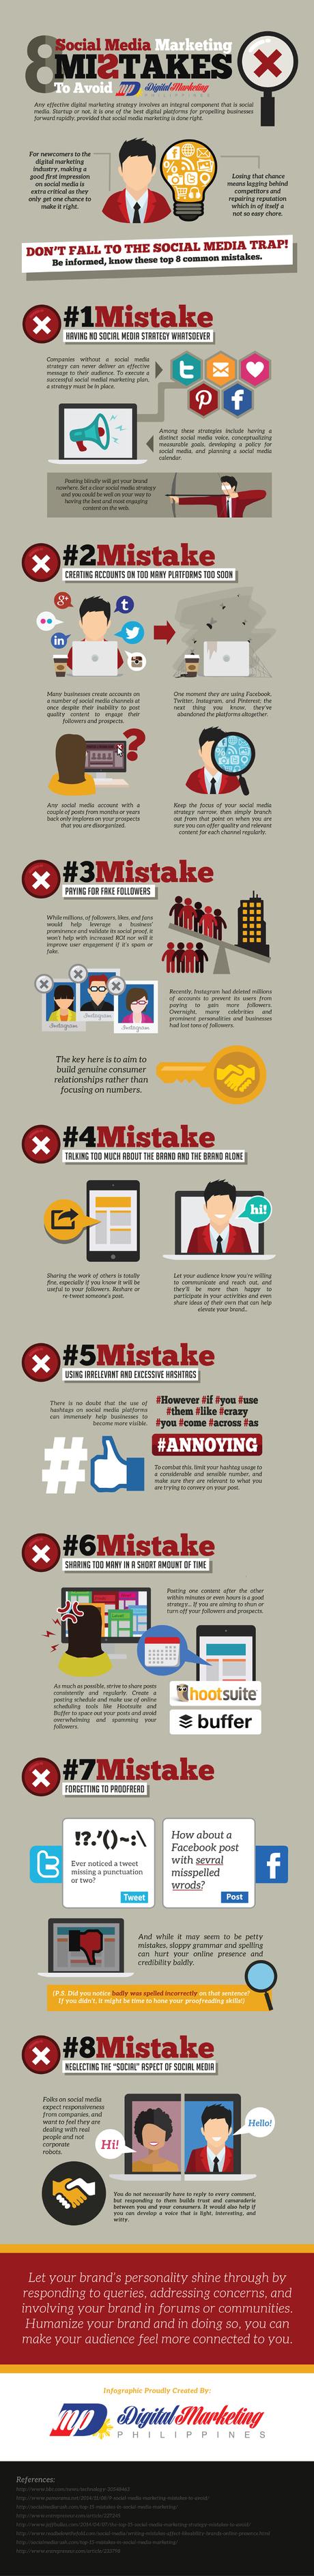 8 errores en Social Media Marketing que deberías evitar